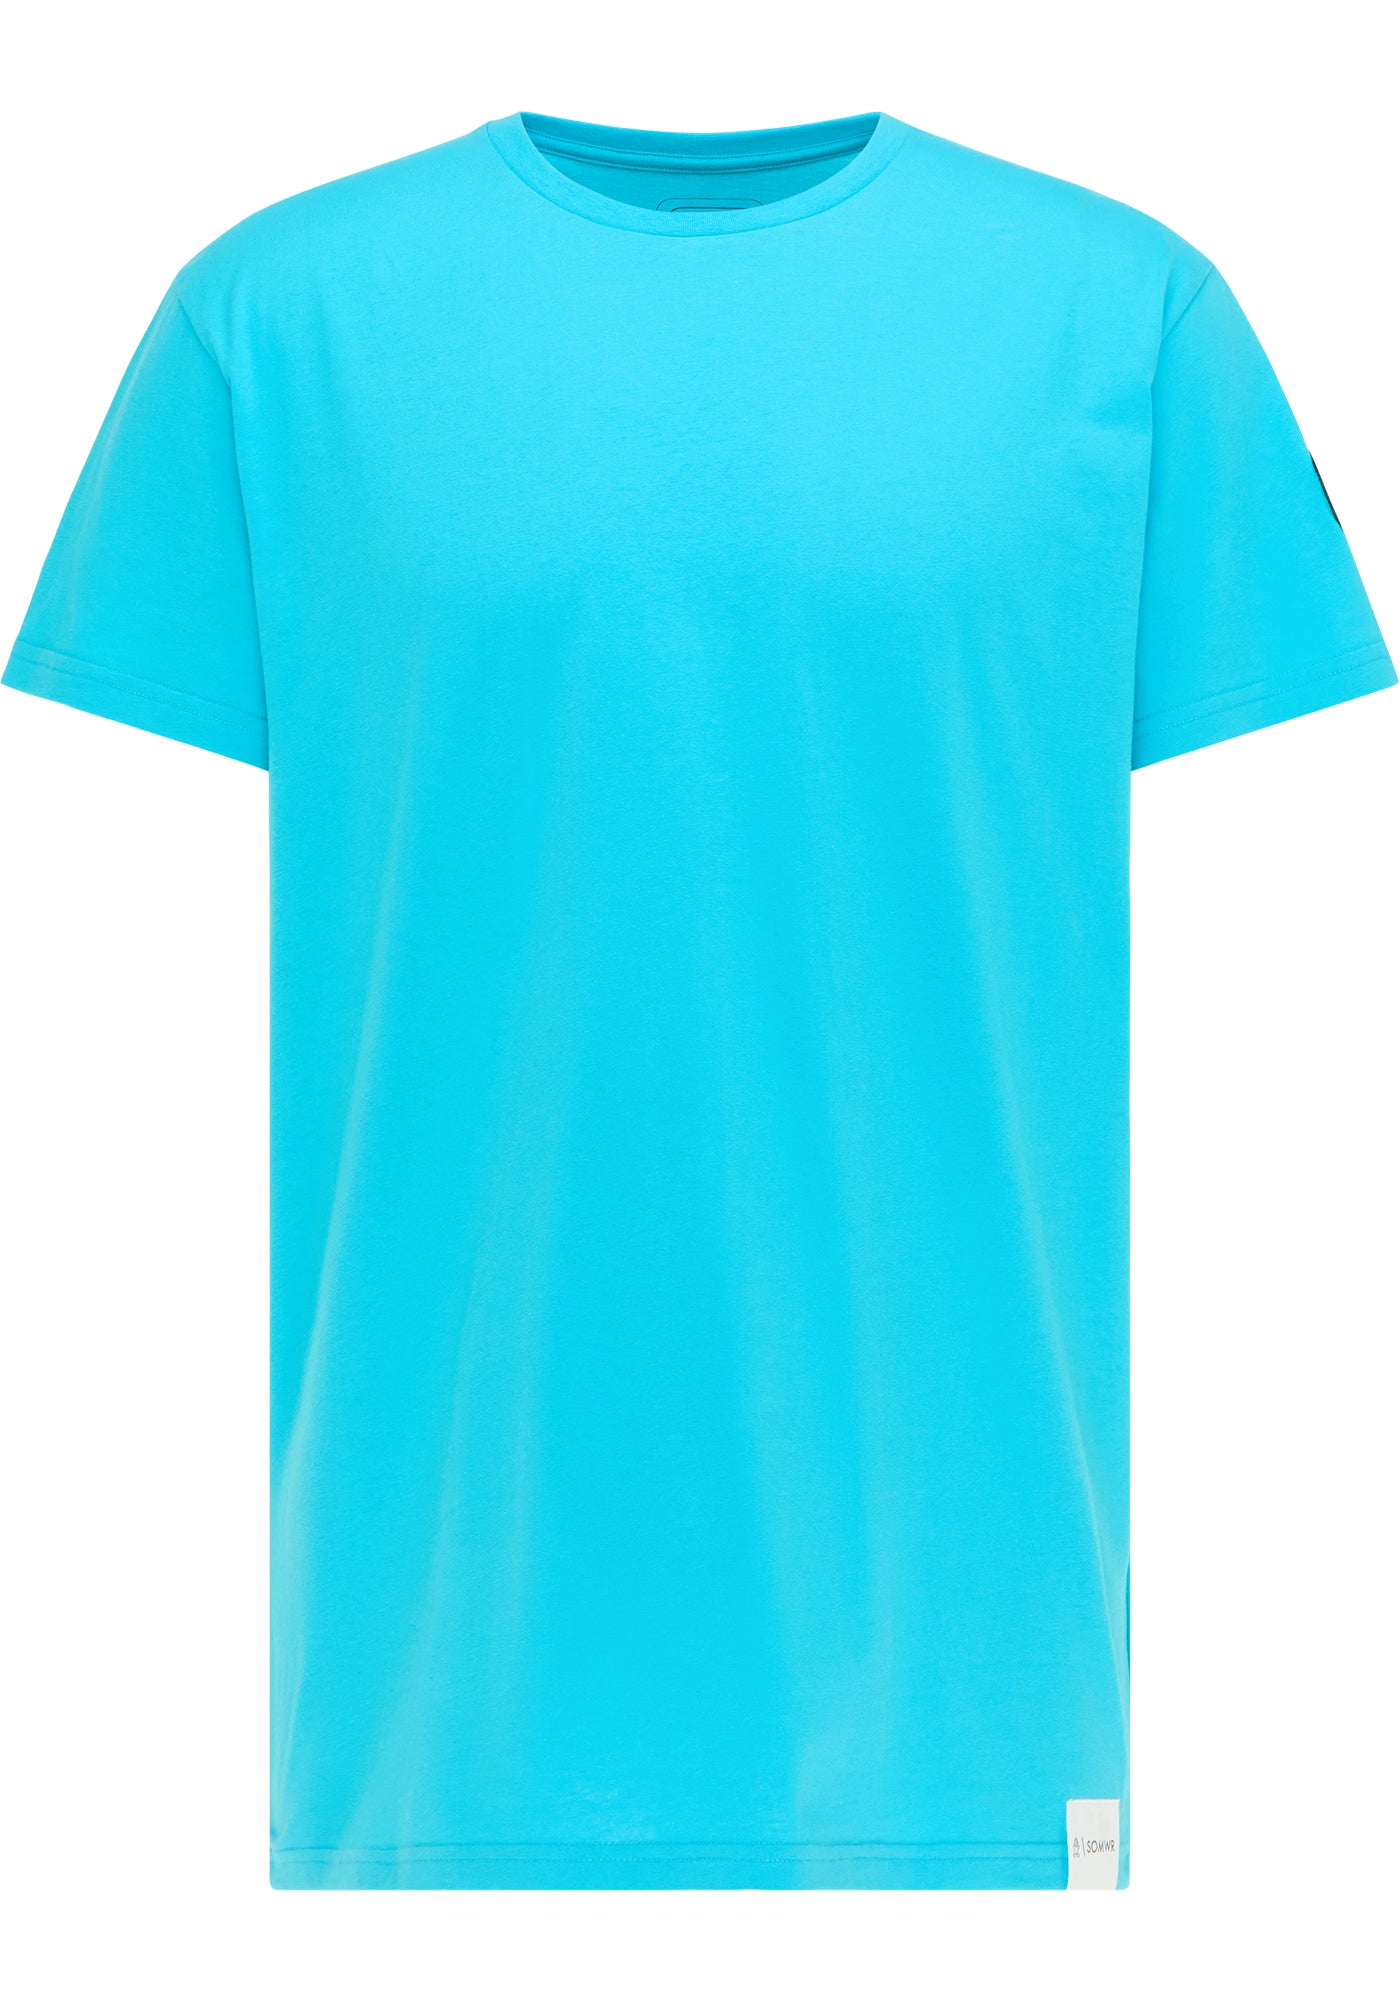 SOMWR INFLUENCER TEE T-Shirt BLU003